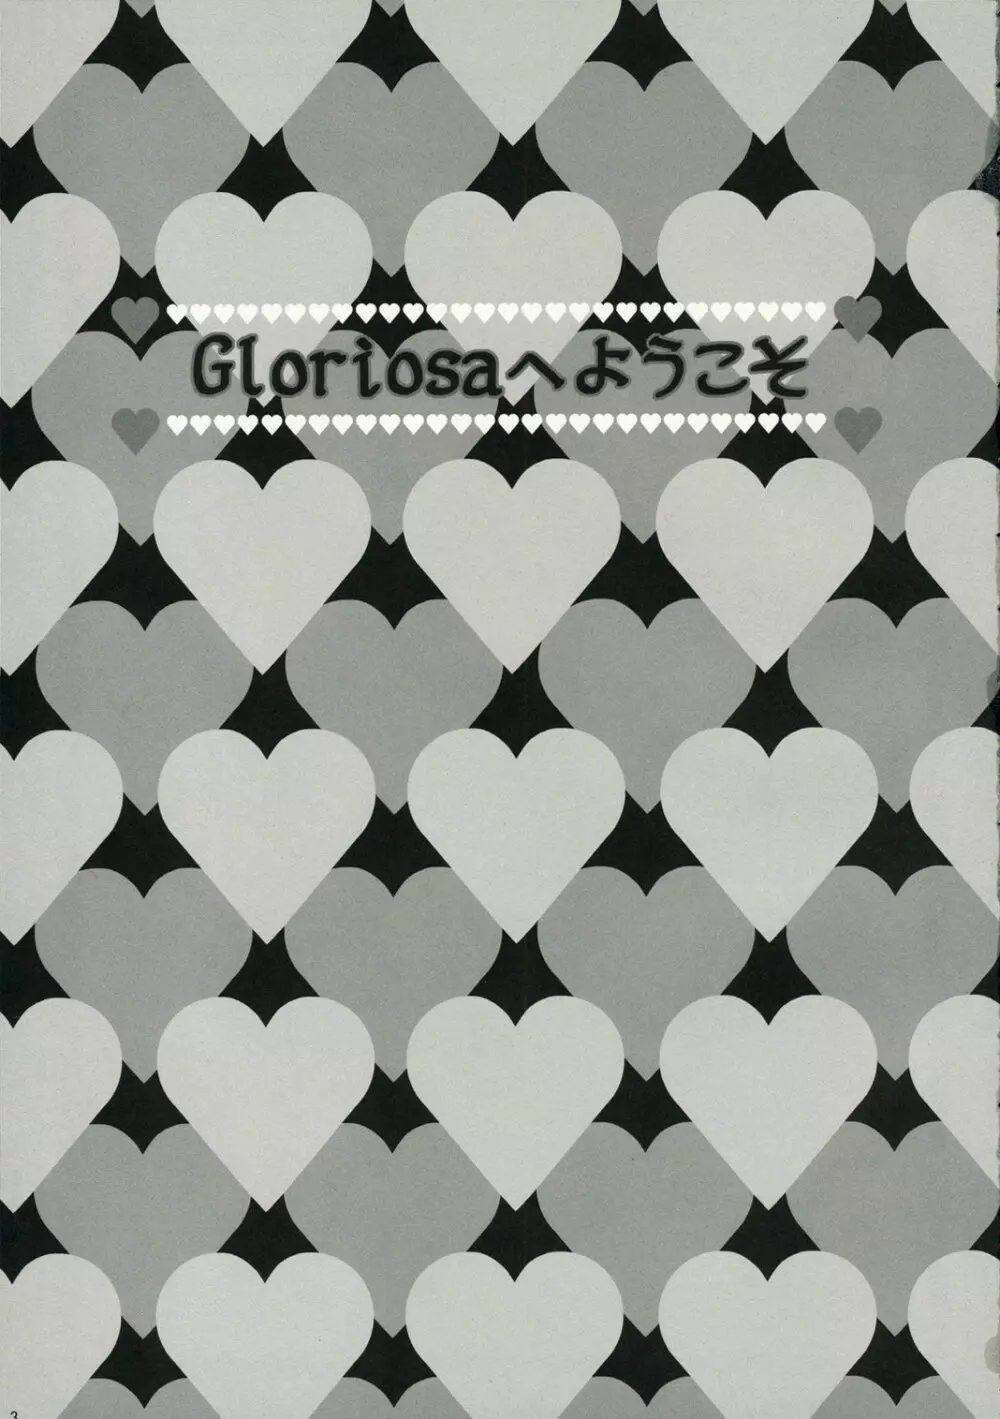 Gloriosa e youkoso 2ページ